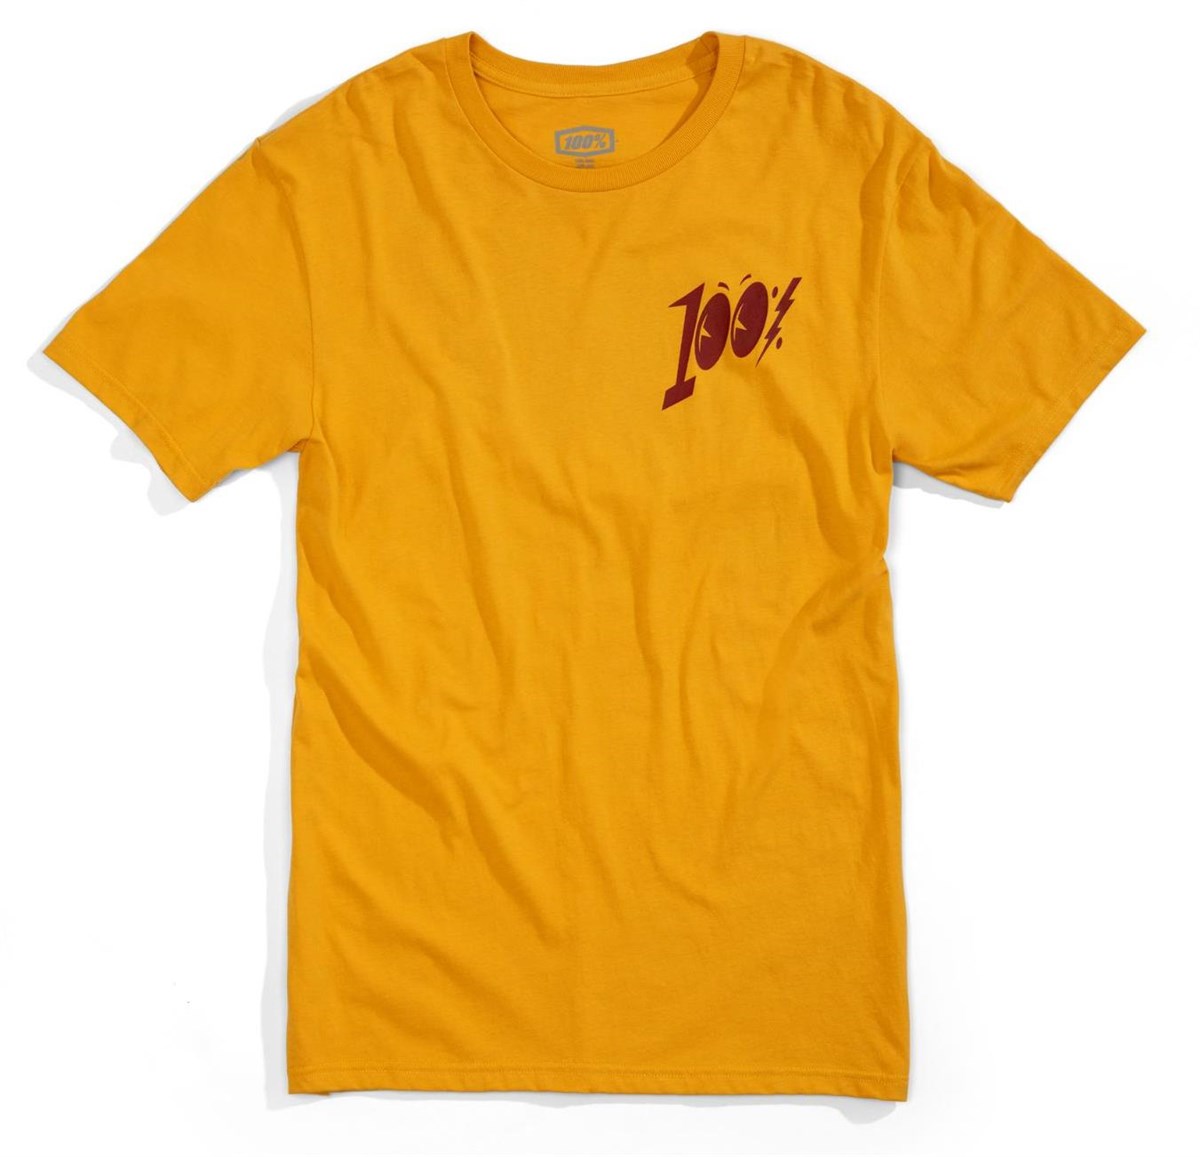 100% Sunnyside T-Shirt product image